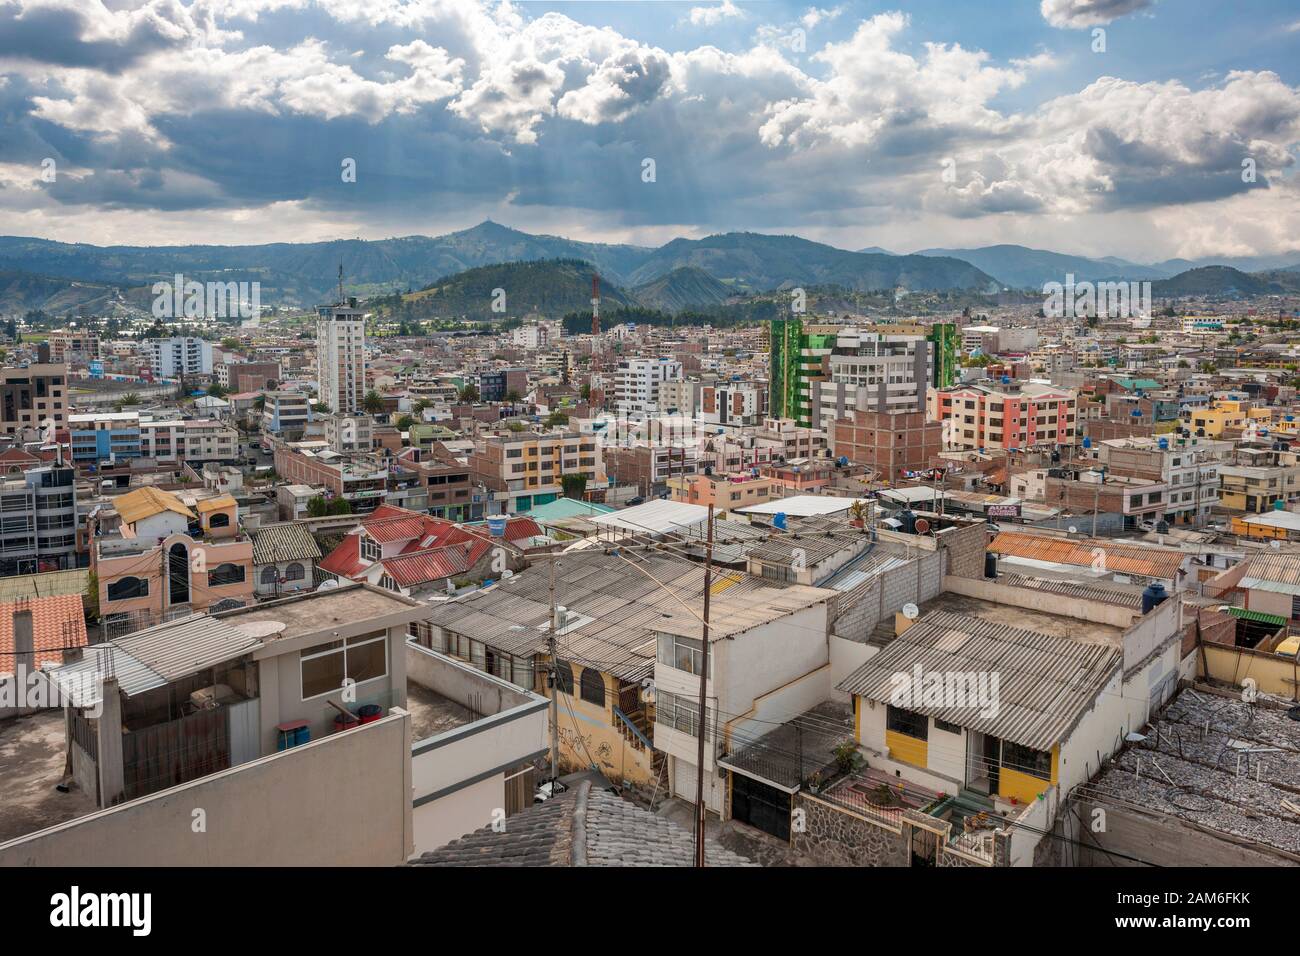 The town of Riobamba in Ecuador. Stock Photo